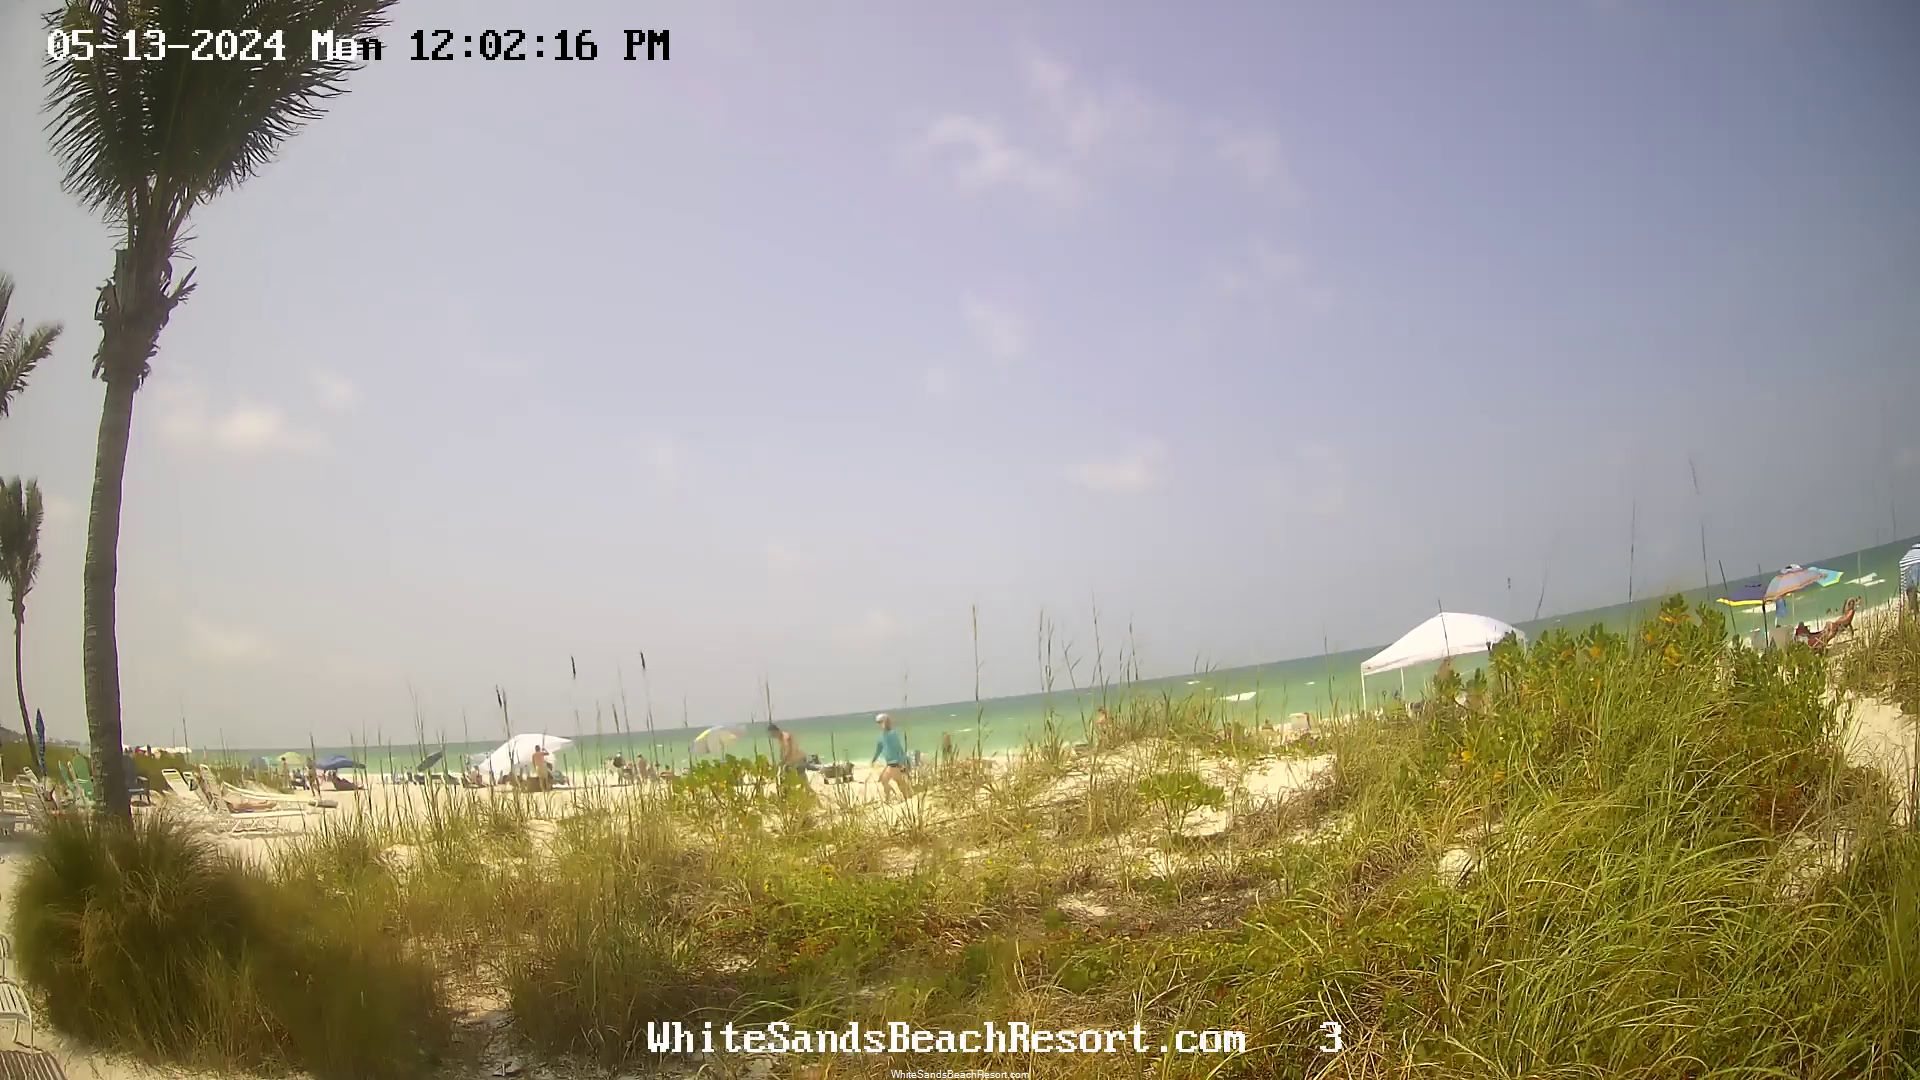 Holmes Beach, Florida Mo. 11:56